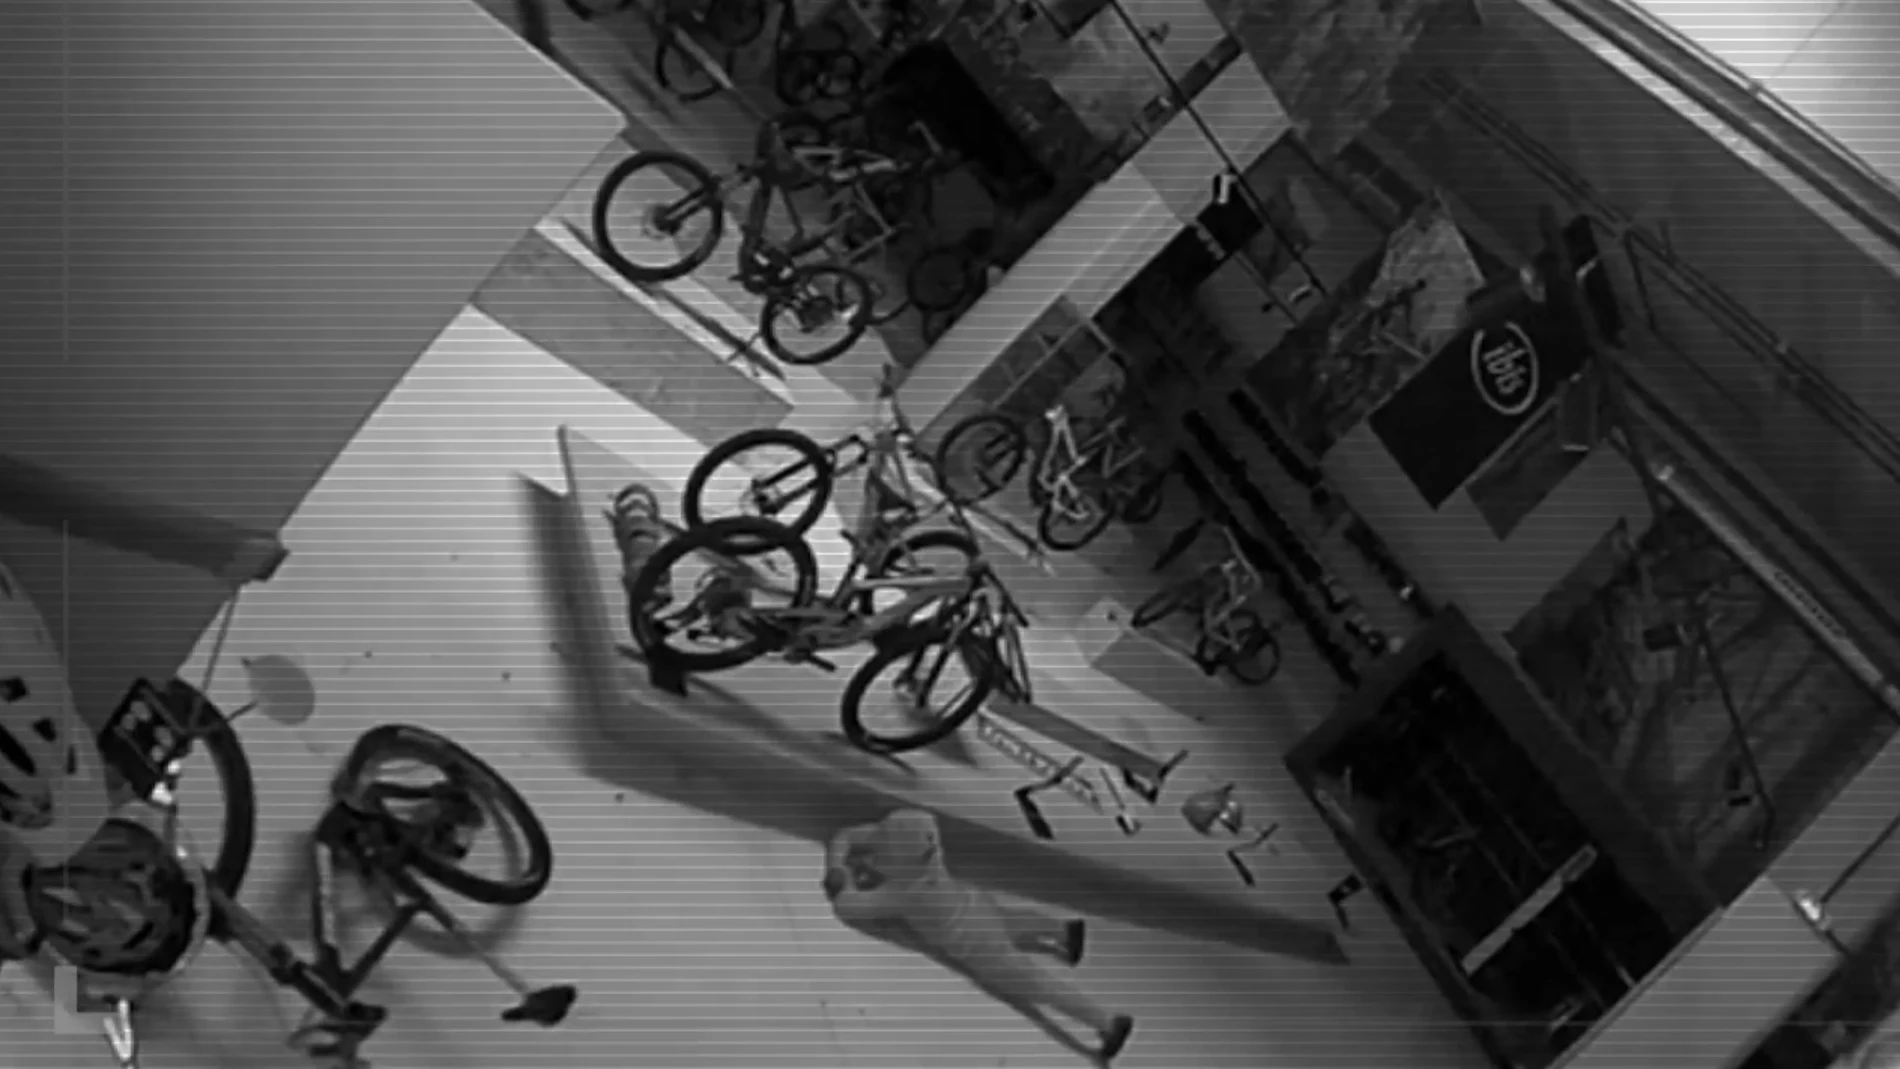 El sorprendente mensaje de los dueños de una tienda cuando les robaron 50.000 euros en bicicleta